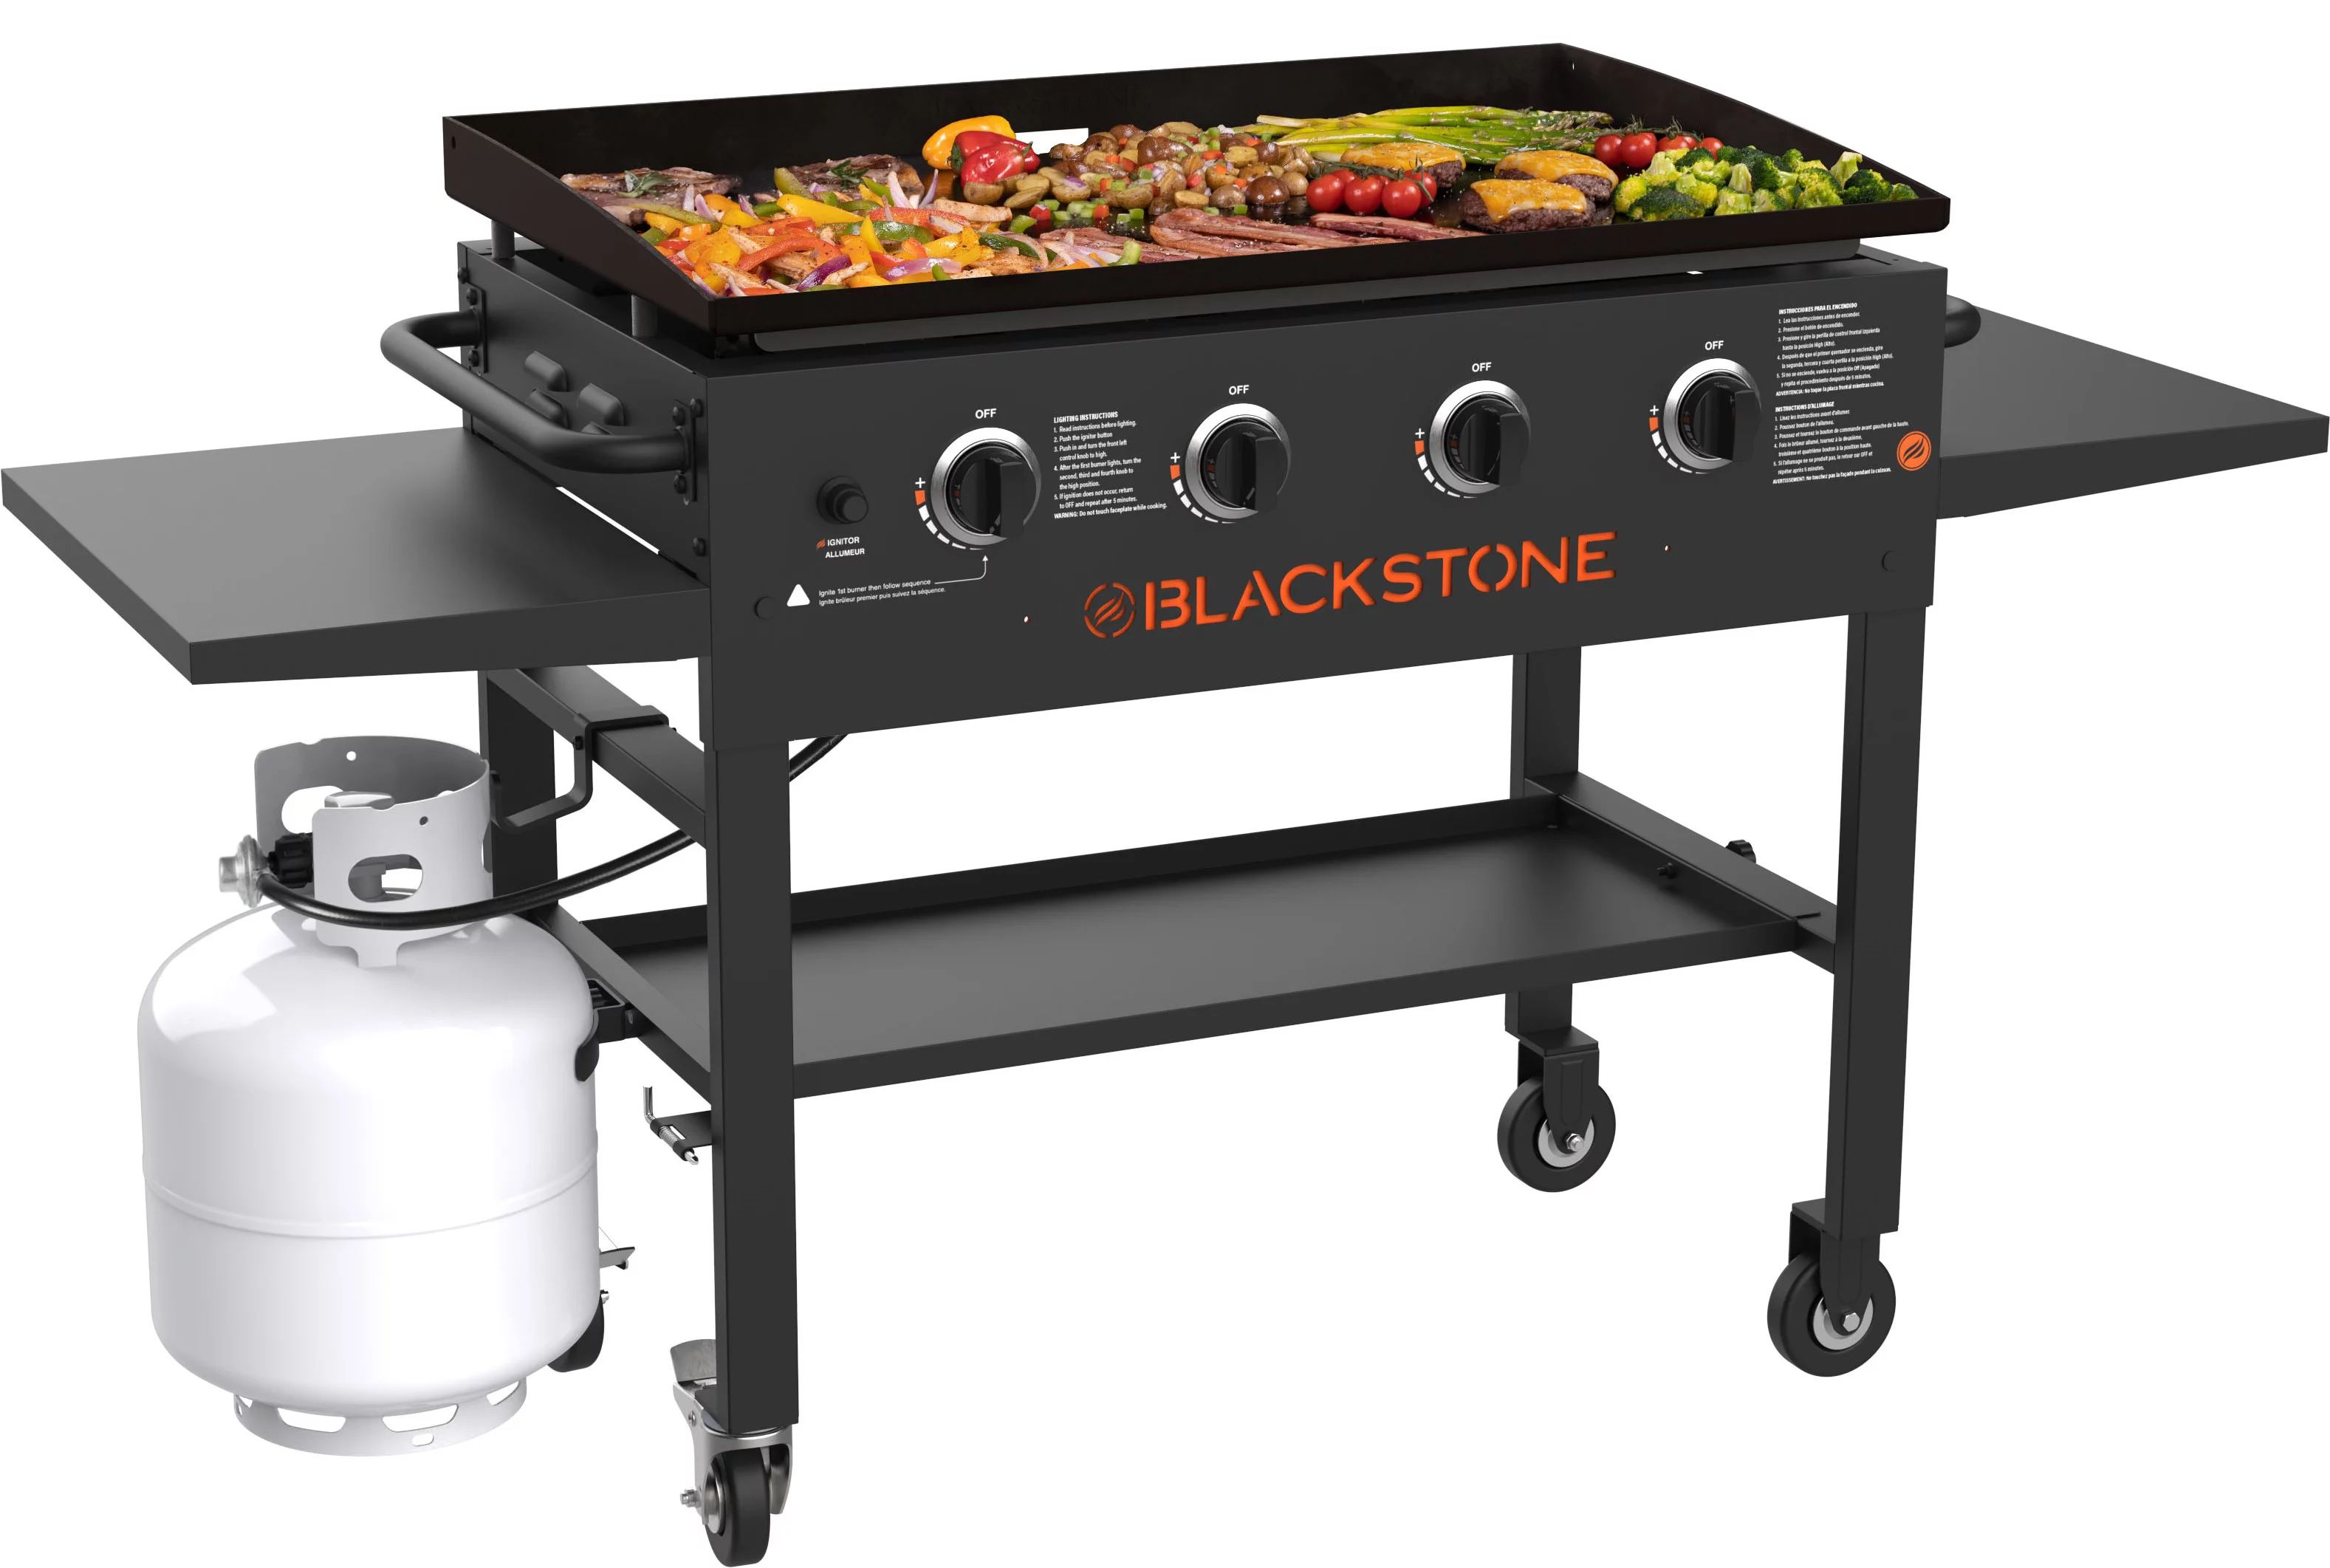 Blackstone 4-Burner 36" Griddle Cooking Station with Side Shelves - Walmart.com | Walmart (US)